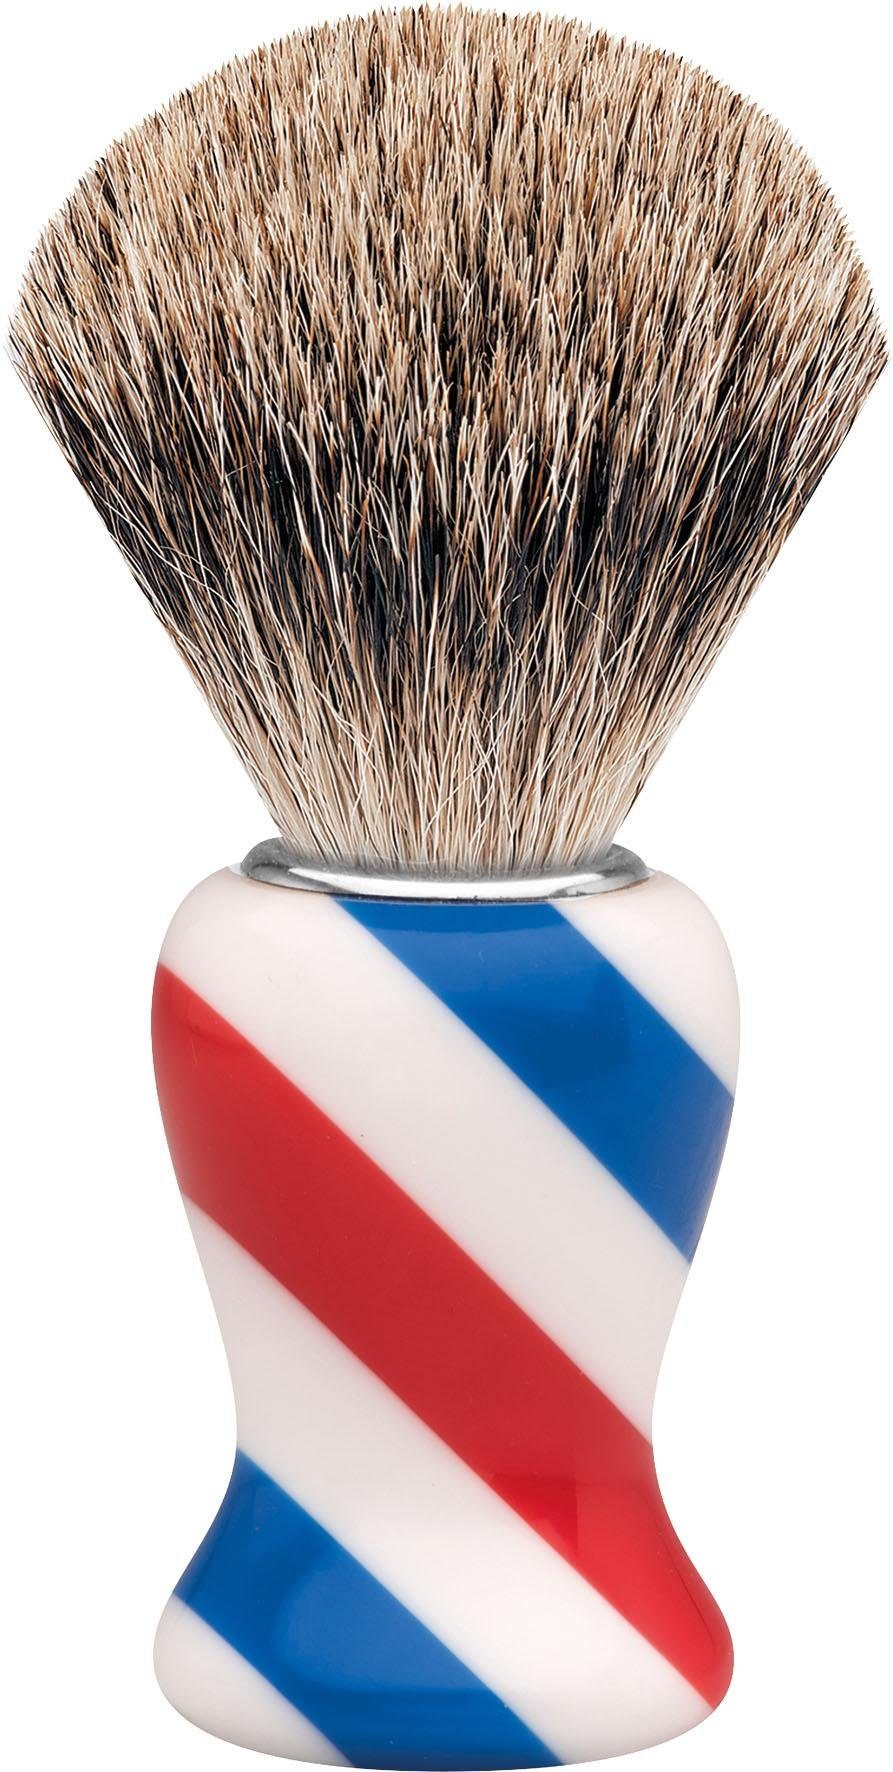 ERBE Rasierpinsel M, Dachshaar, Design/Stripes Barbershop